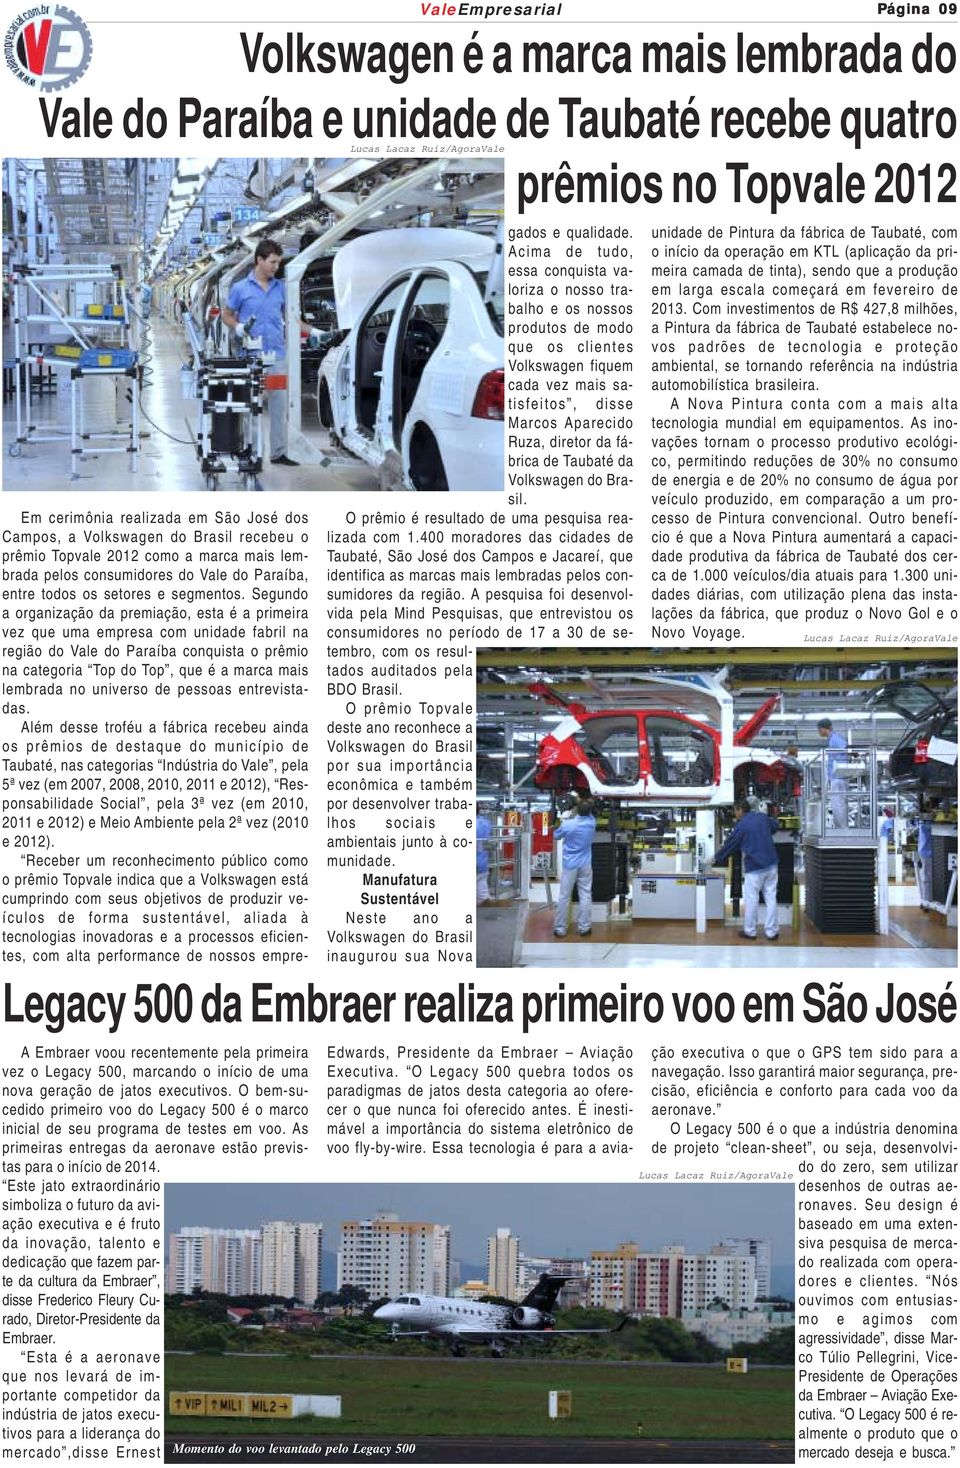 Segundo a organização da premiação, esta é a primeira vez que uma empresa com unidade fabril na região do Vale do Paraíba conquista o prêmio na categoria Top do Top, que é a marca mais lembrada no